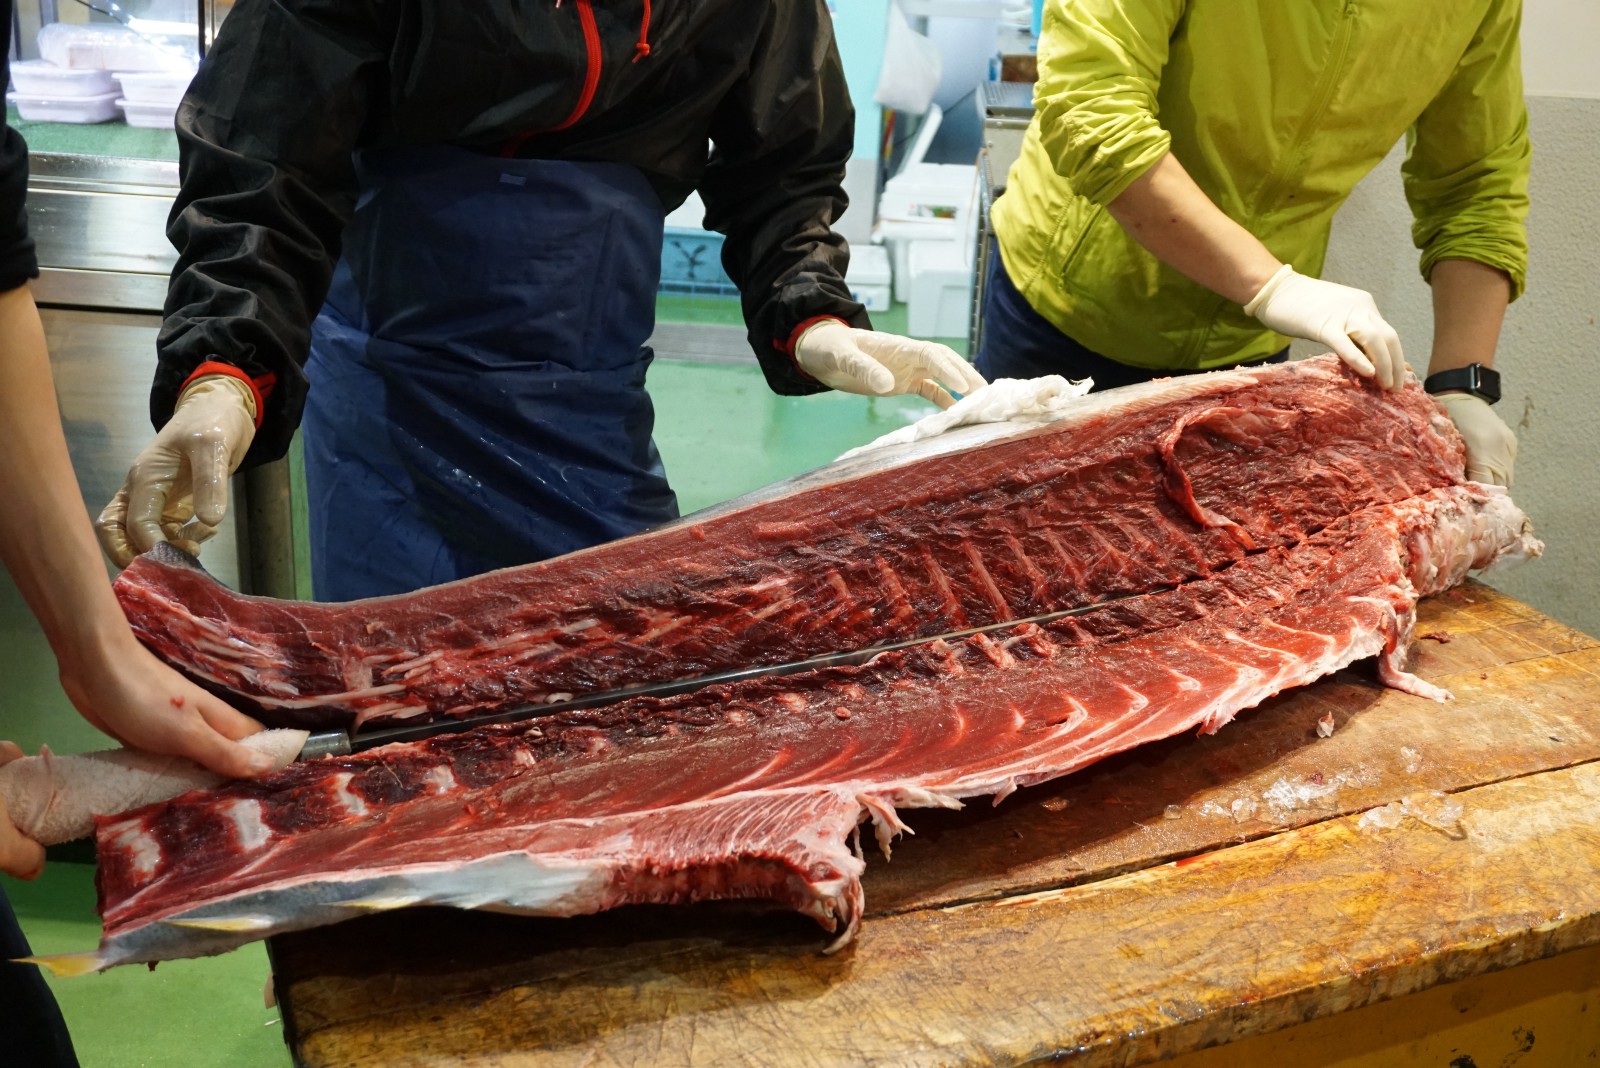 Tuna cutting show at Tsukiji Fish Market